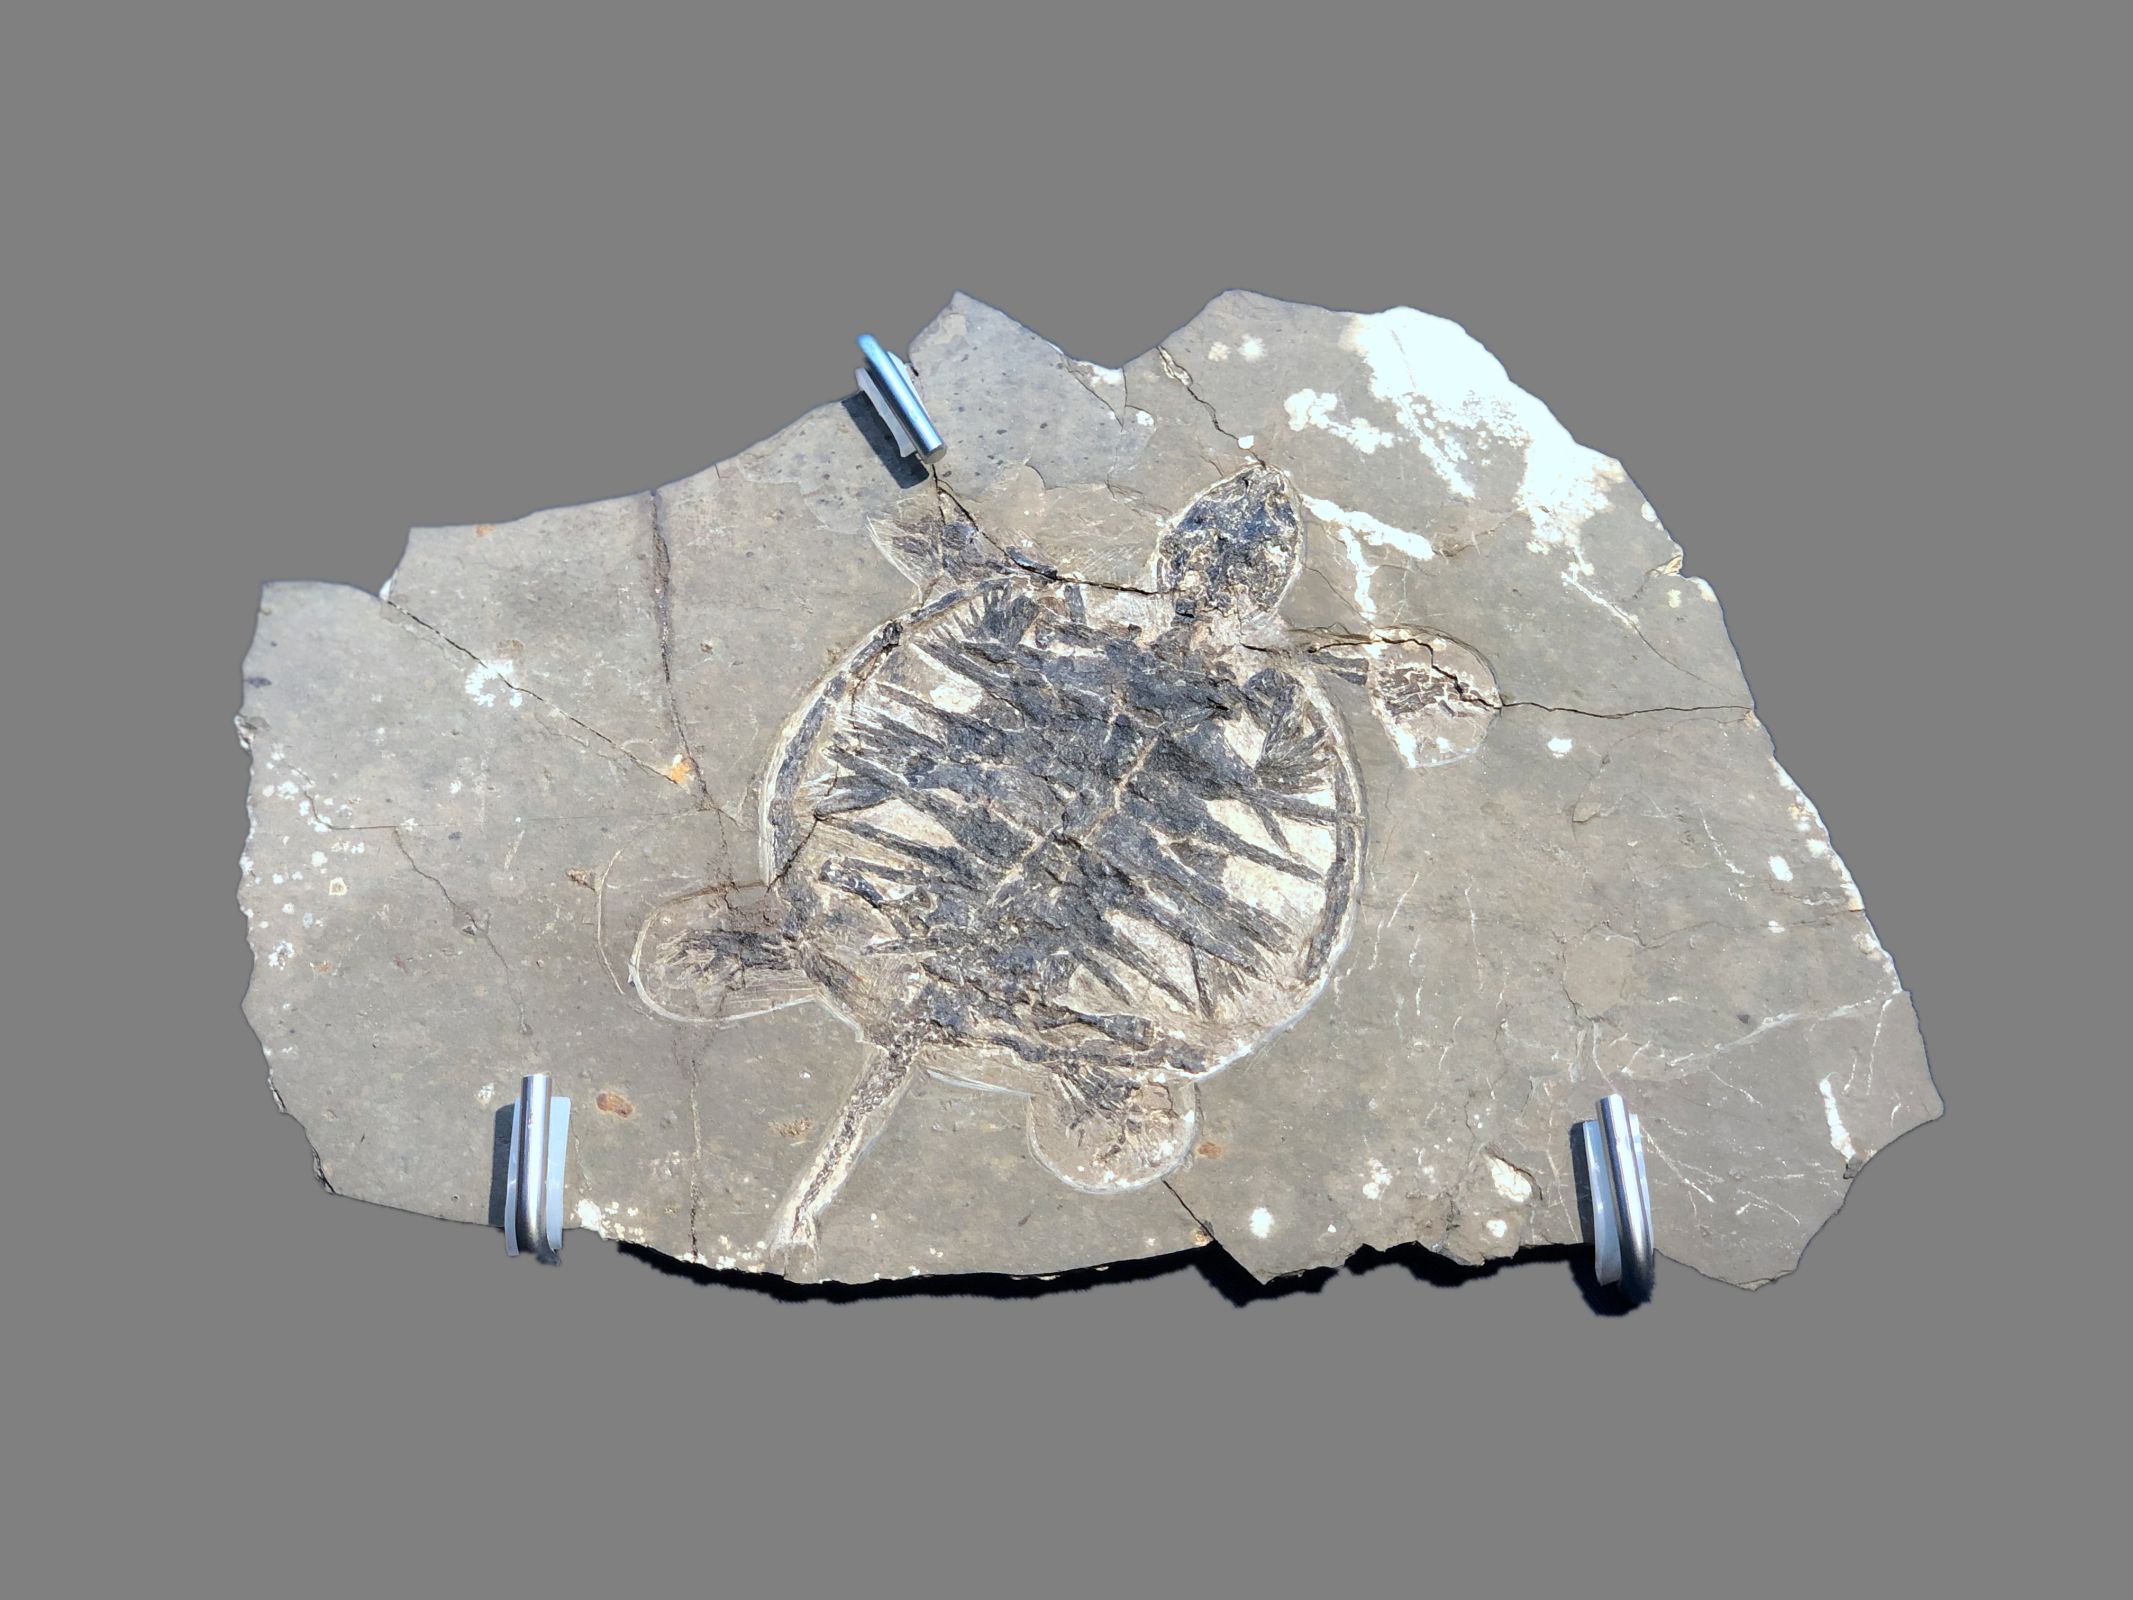 白垩纪地层中发现的最早花蕾化石——“凌源古蕾” - 化石网